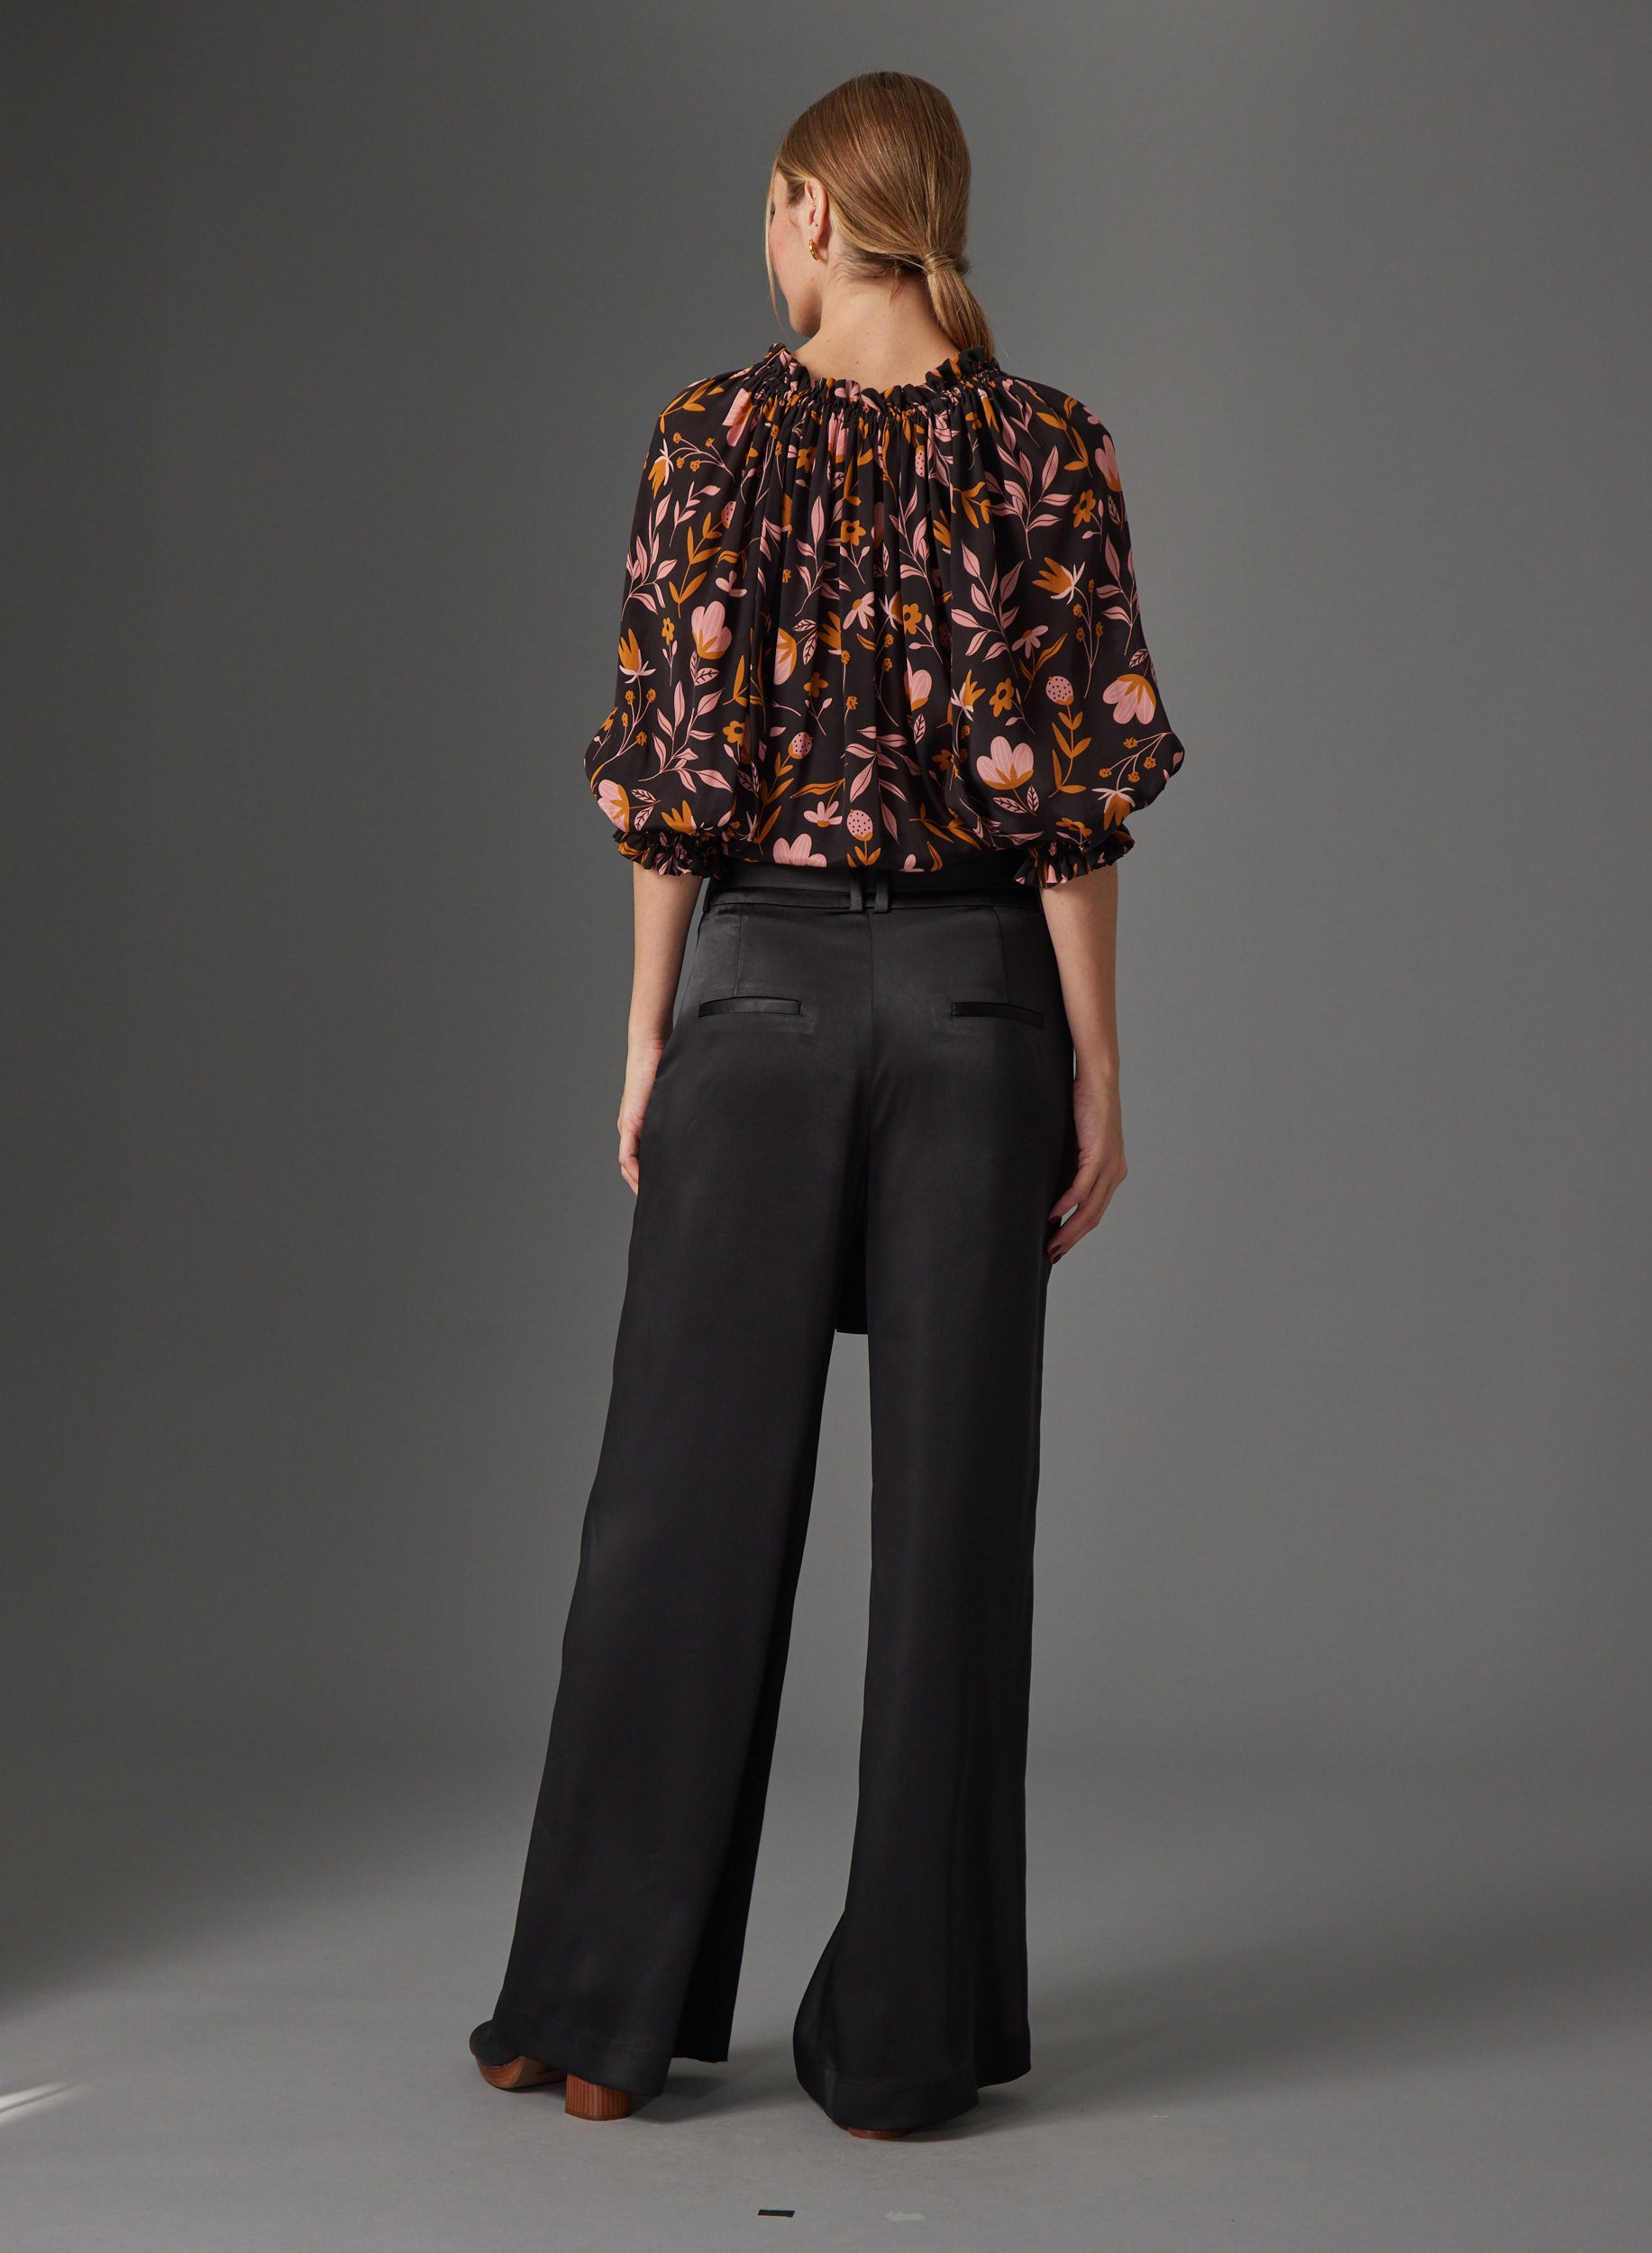 Ellie blouse in Cascading Floral - Gilner Farrar